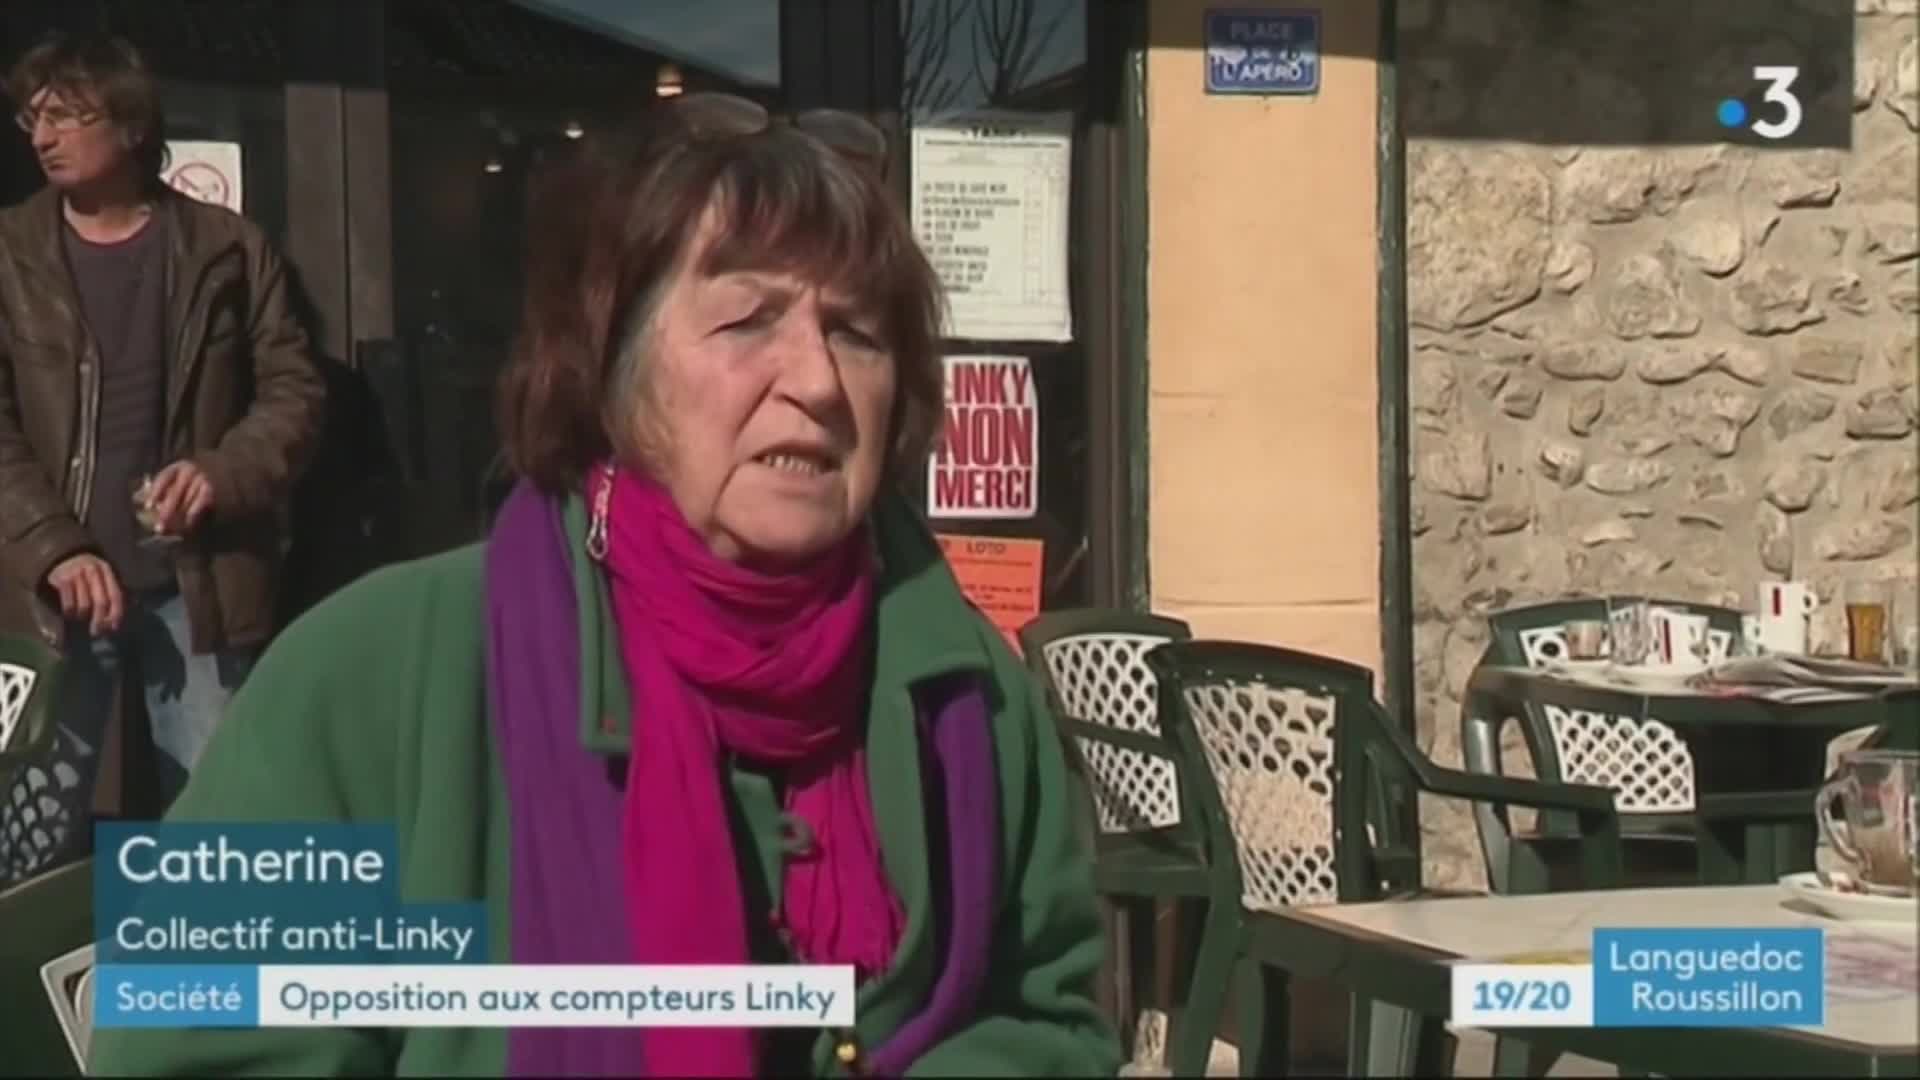 19/20 - F3 Languedoc-Roussillon , des communes refusent linky